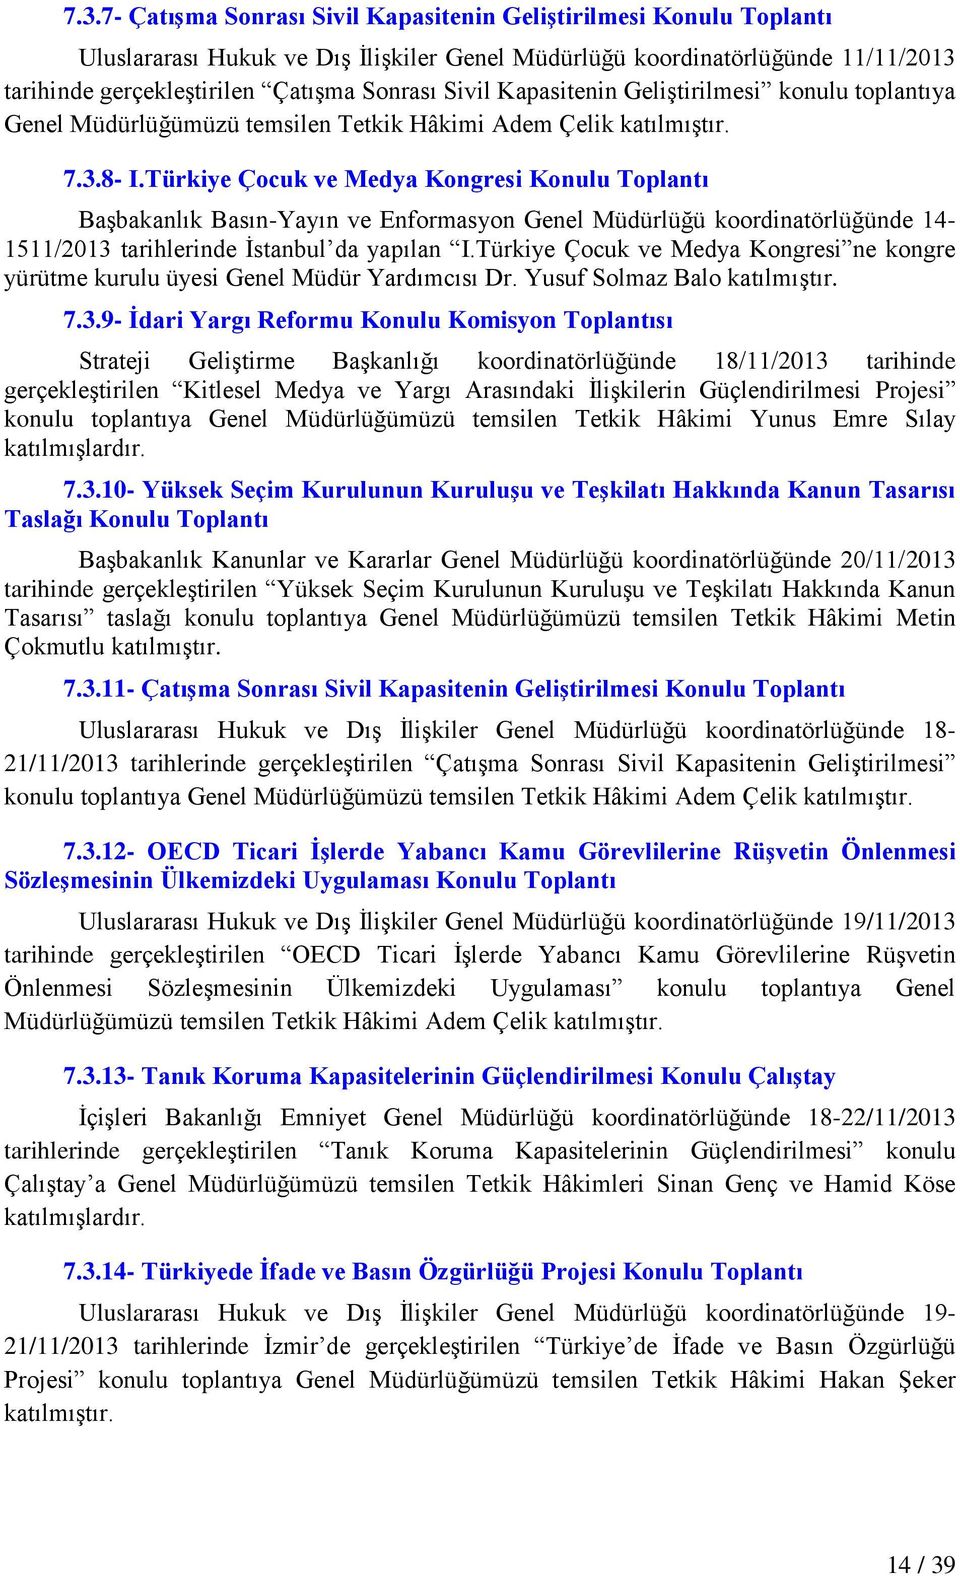 Türkiye Çocuk ve Medya Kongresi Konulu Toplantı BaĢbakanlık Basın-Yayın ve Enformasyon Genel Müdürlüğü koordinatörlüğünde 14-1511/2013 tarihlerinde Ġstanbul da yapılan I.